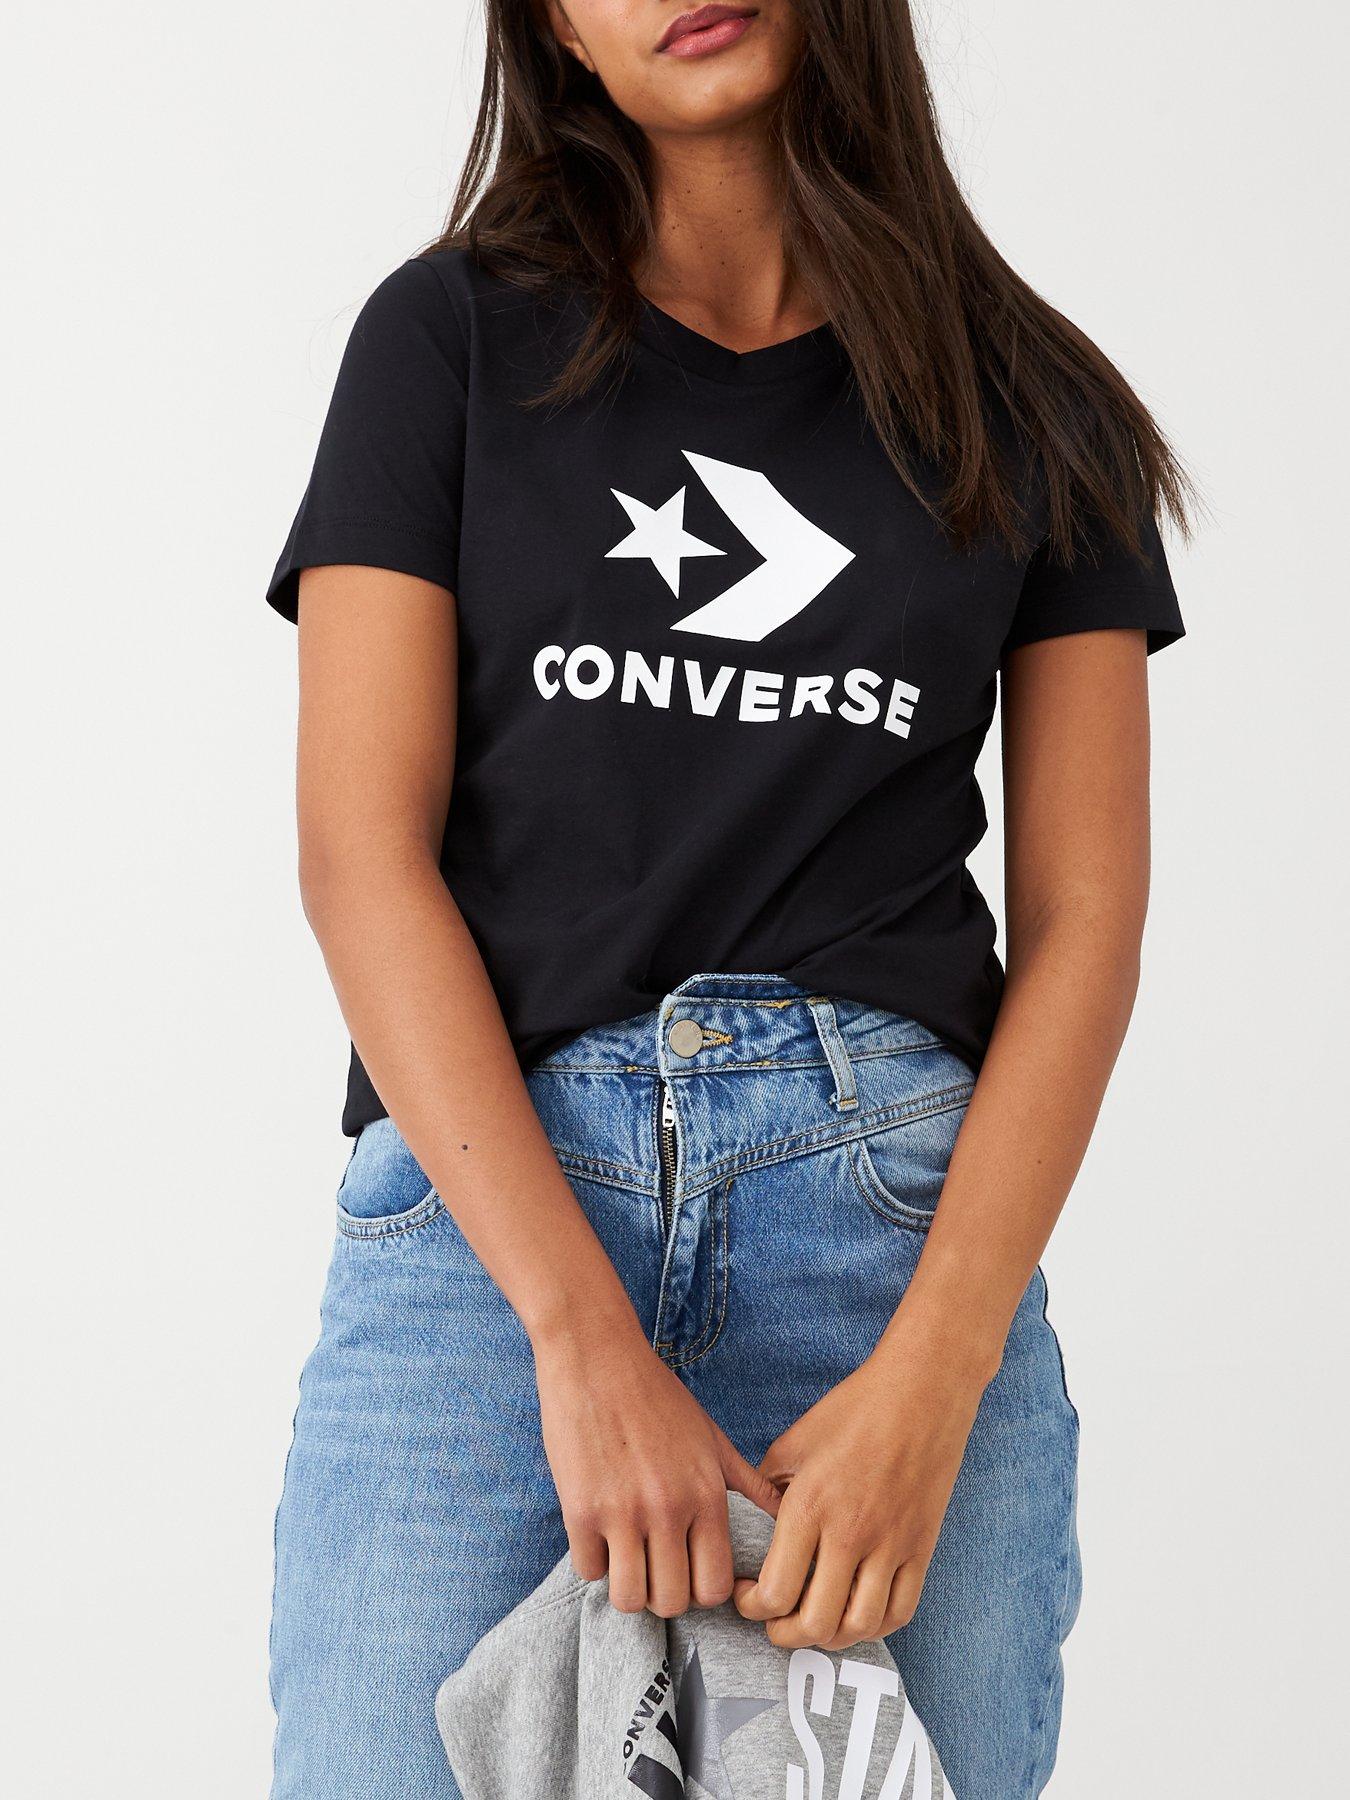 converse t shirt womens